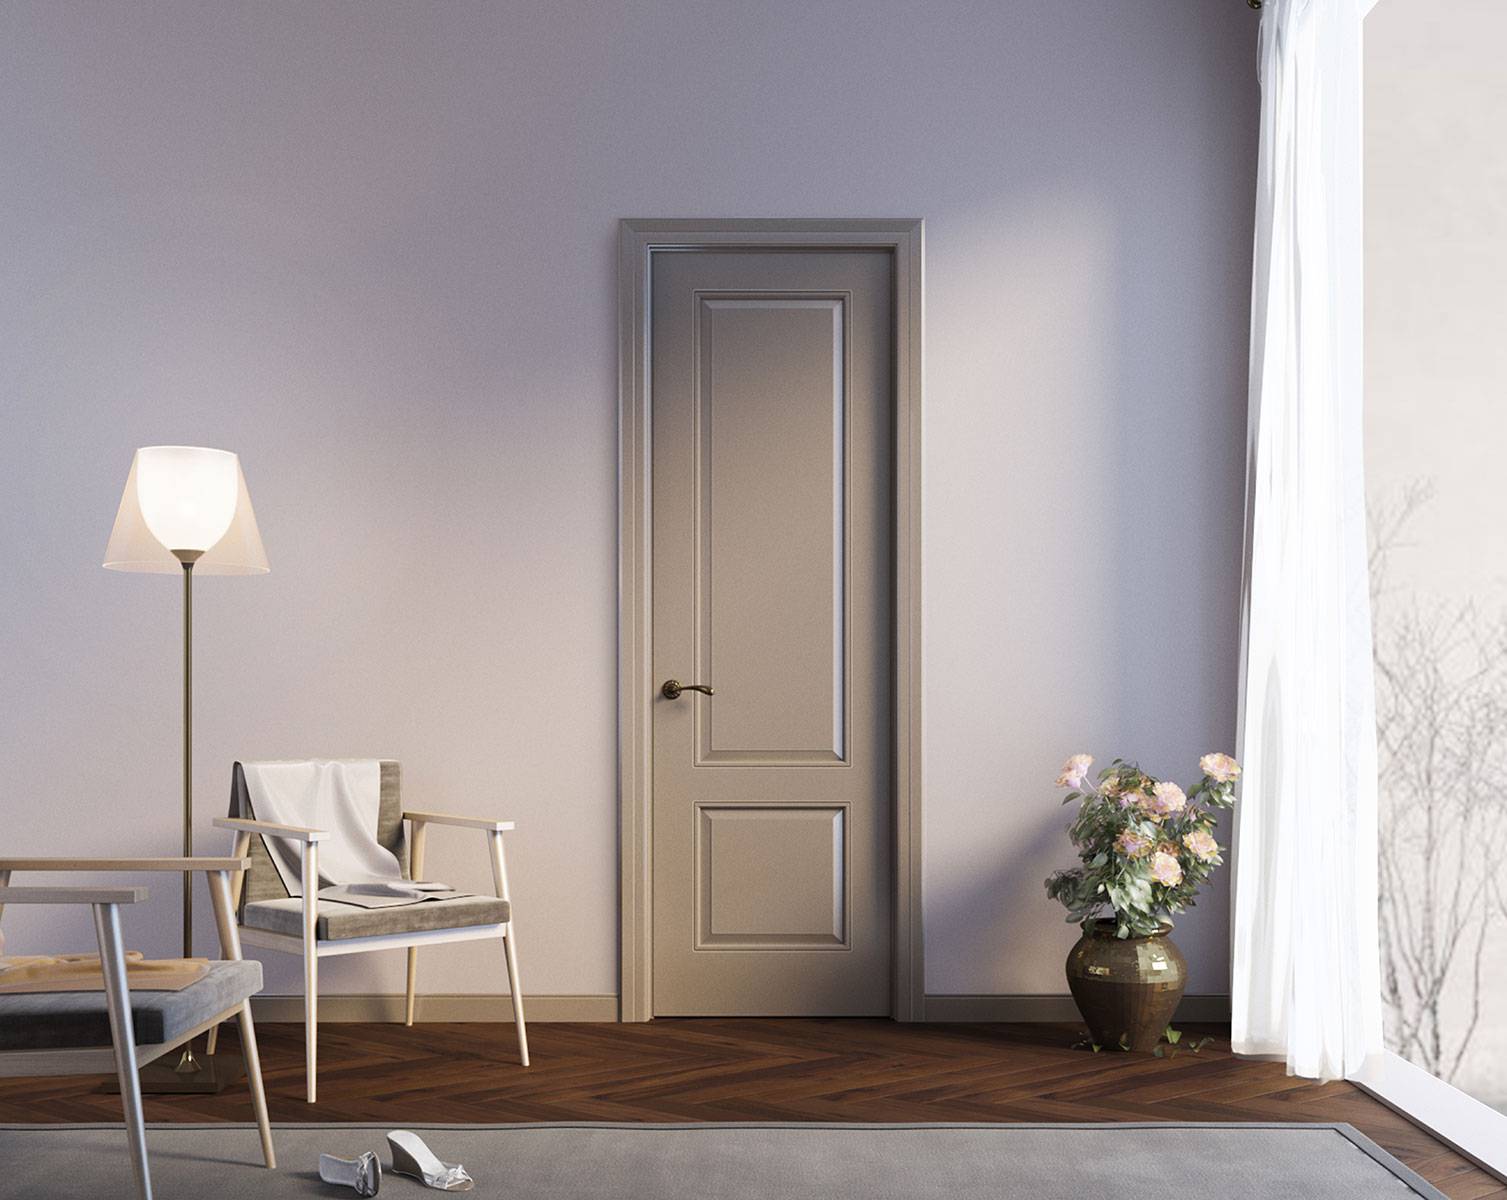 Как выбрать цвет межкомнатных дверей: фото в интерьере, популярные расцветки